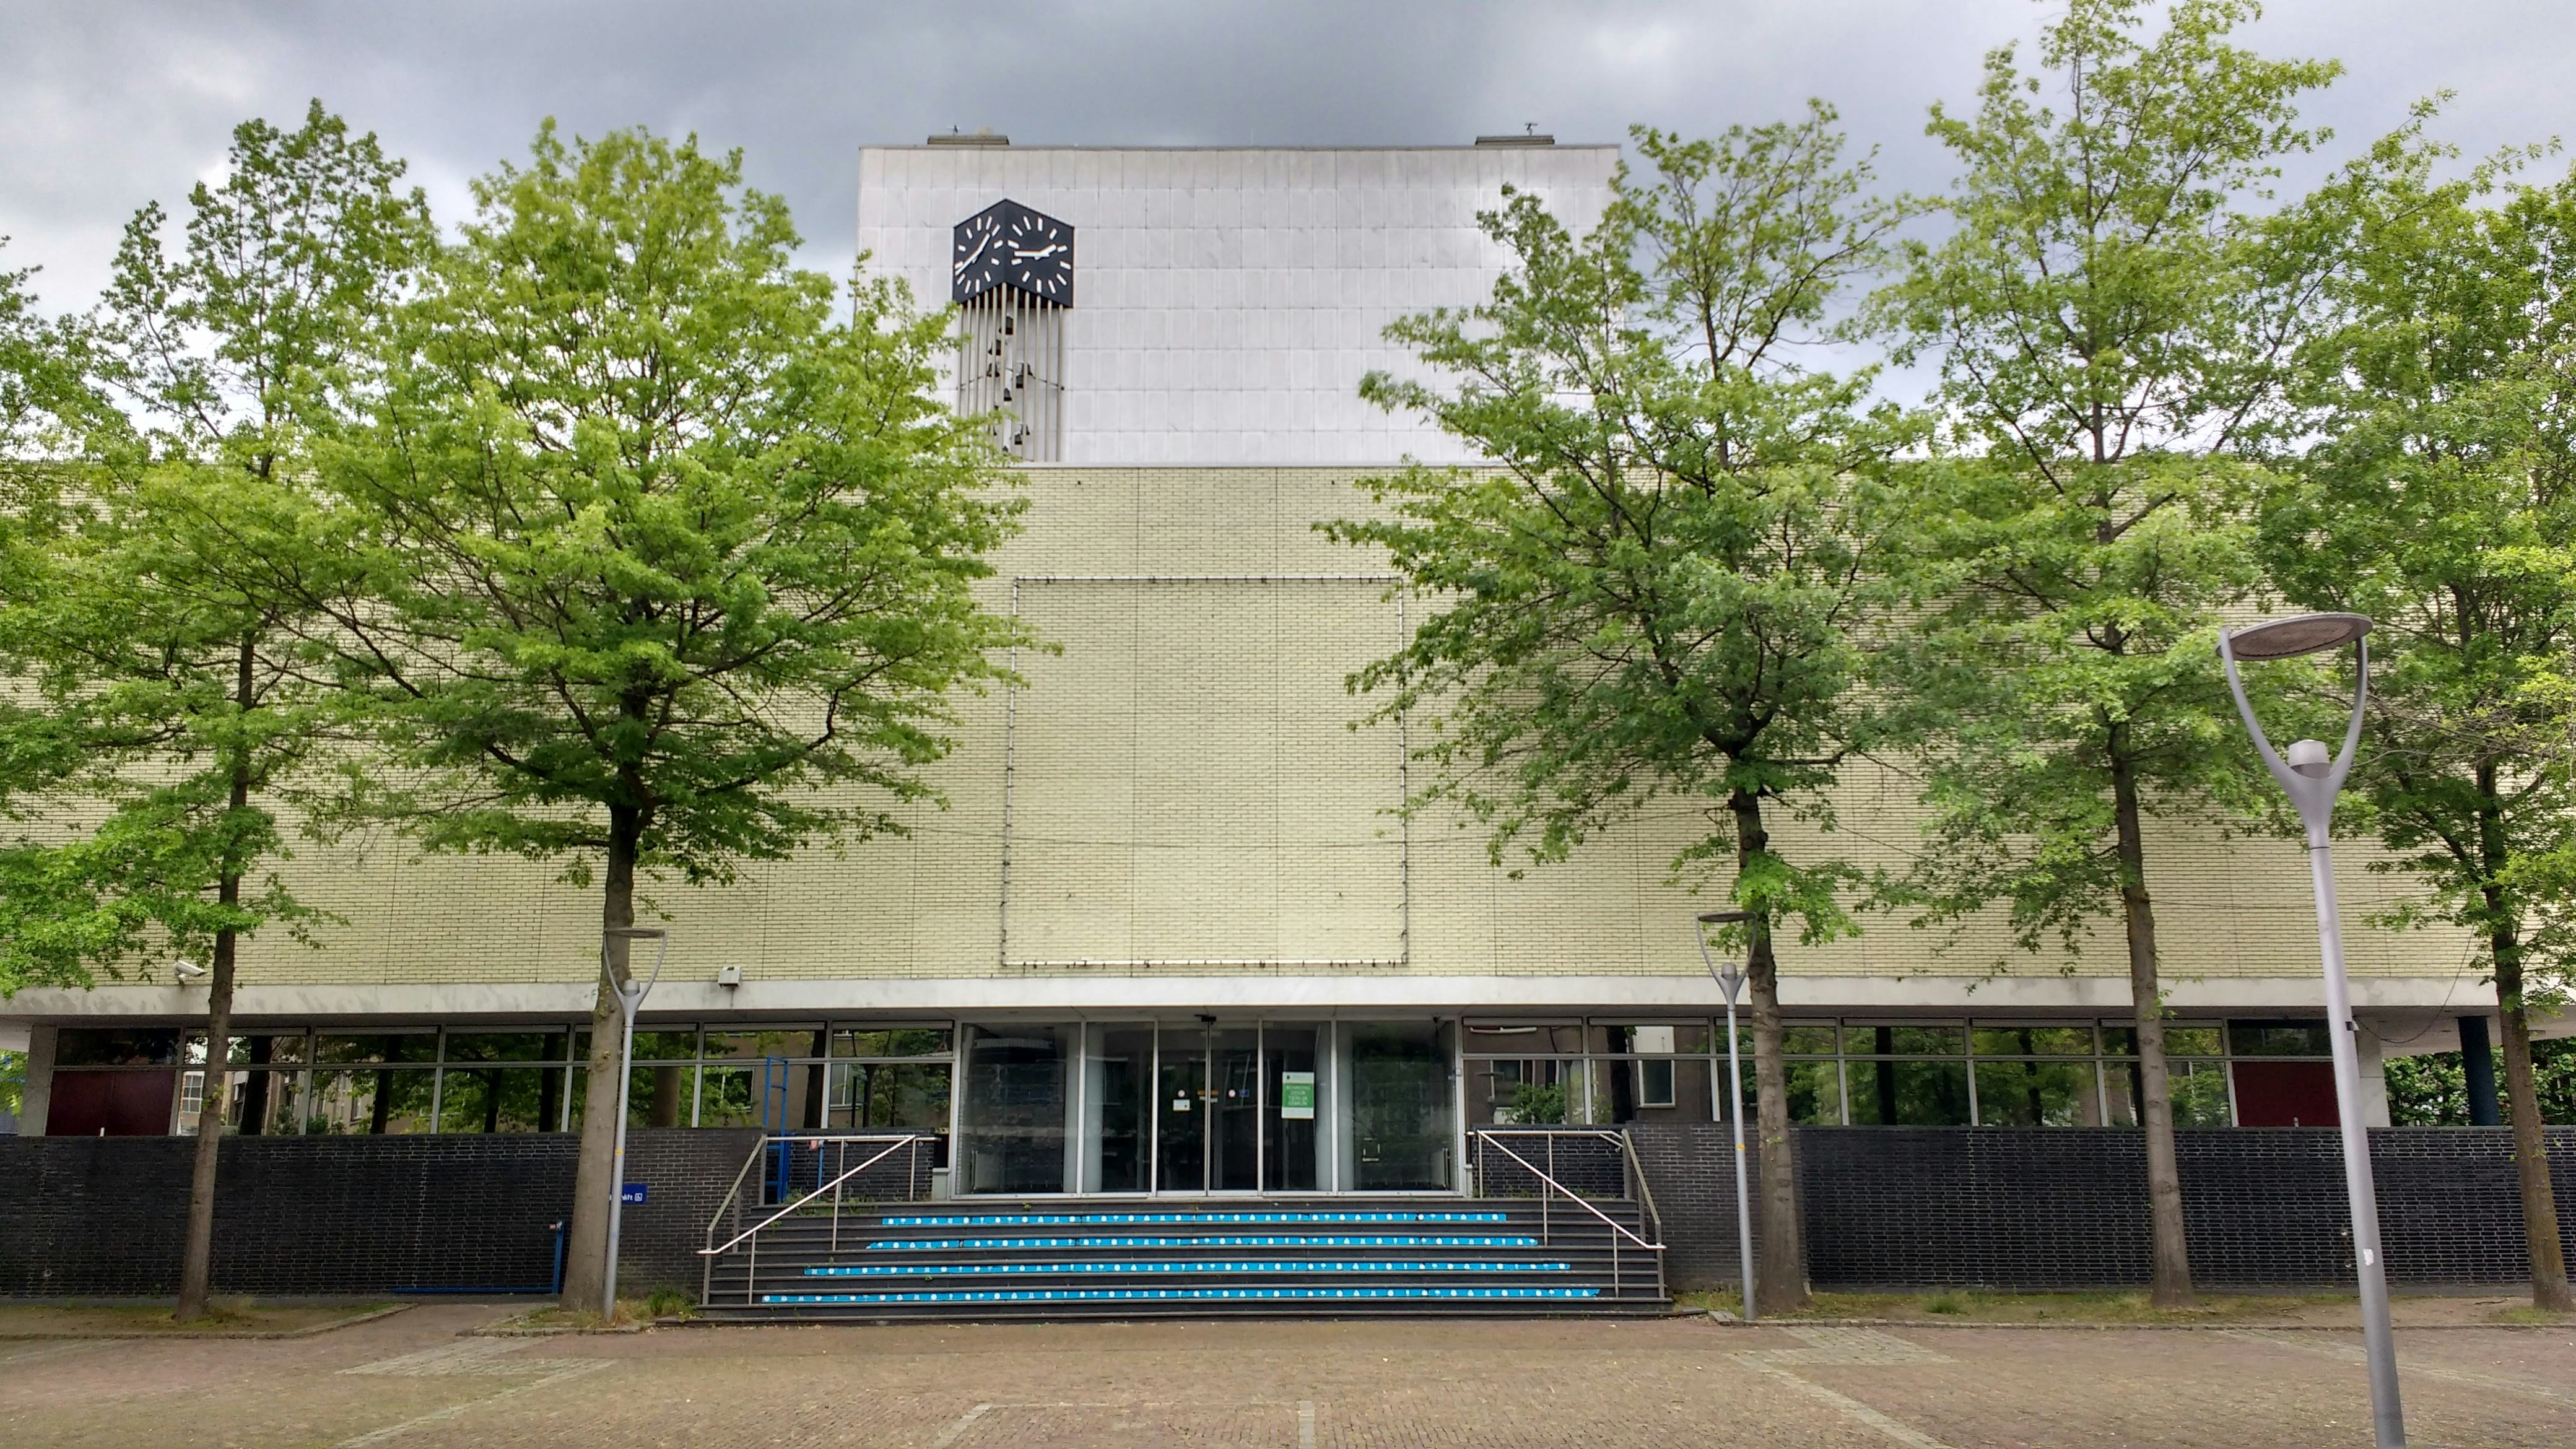 Het huidige Stadhuis van Almelo, een ontwerp van J.J.P. Oud